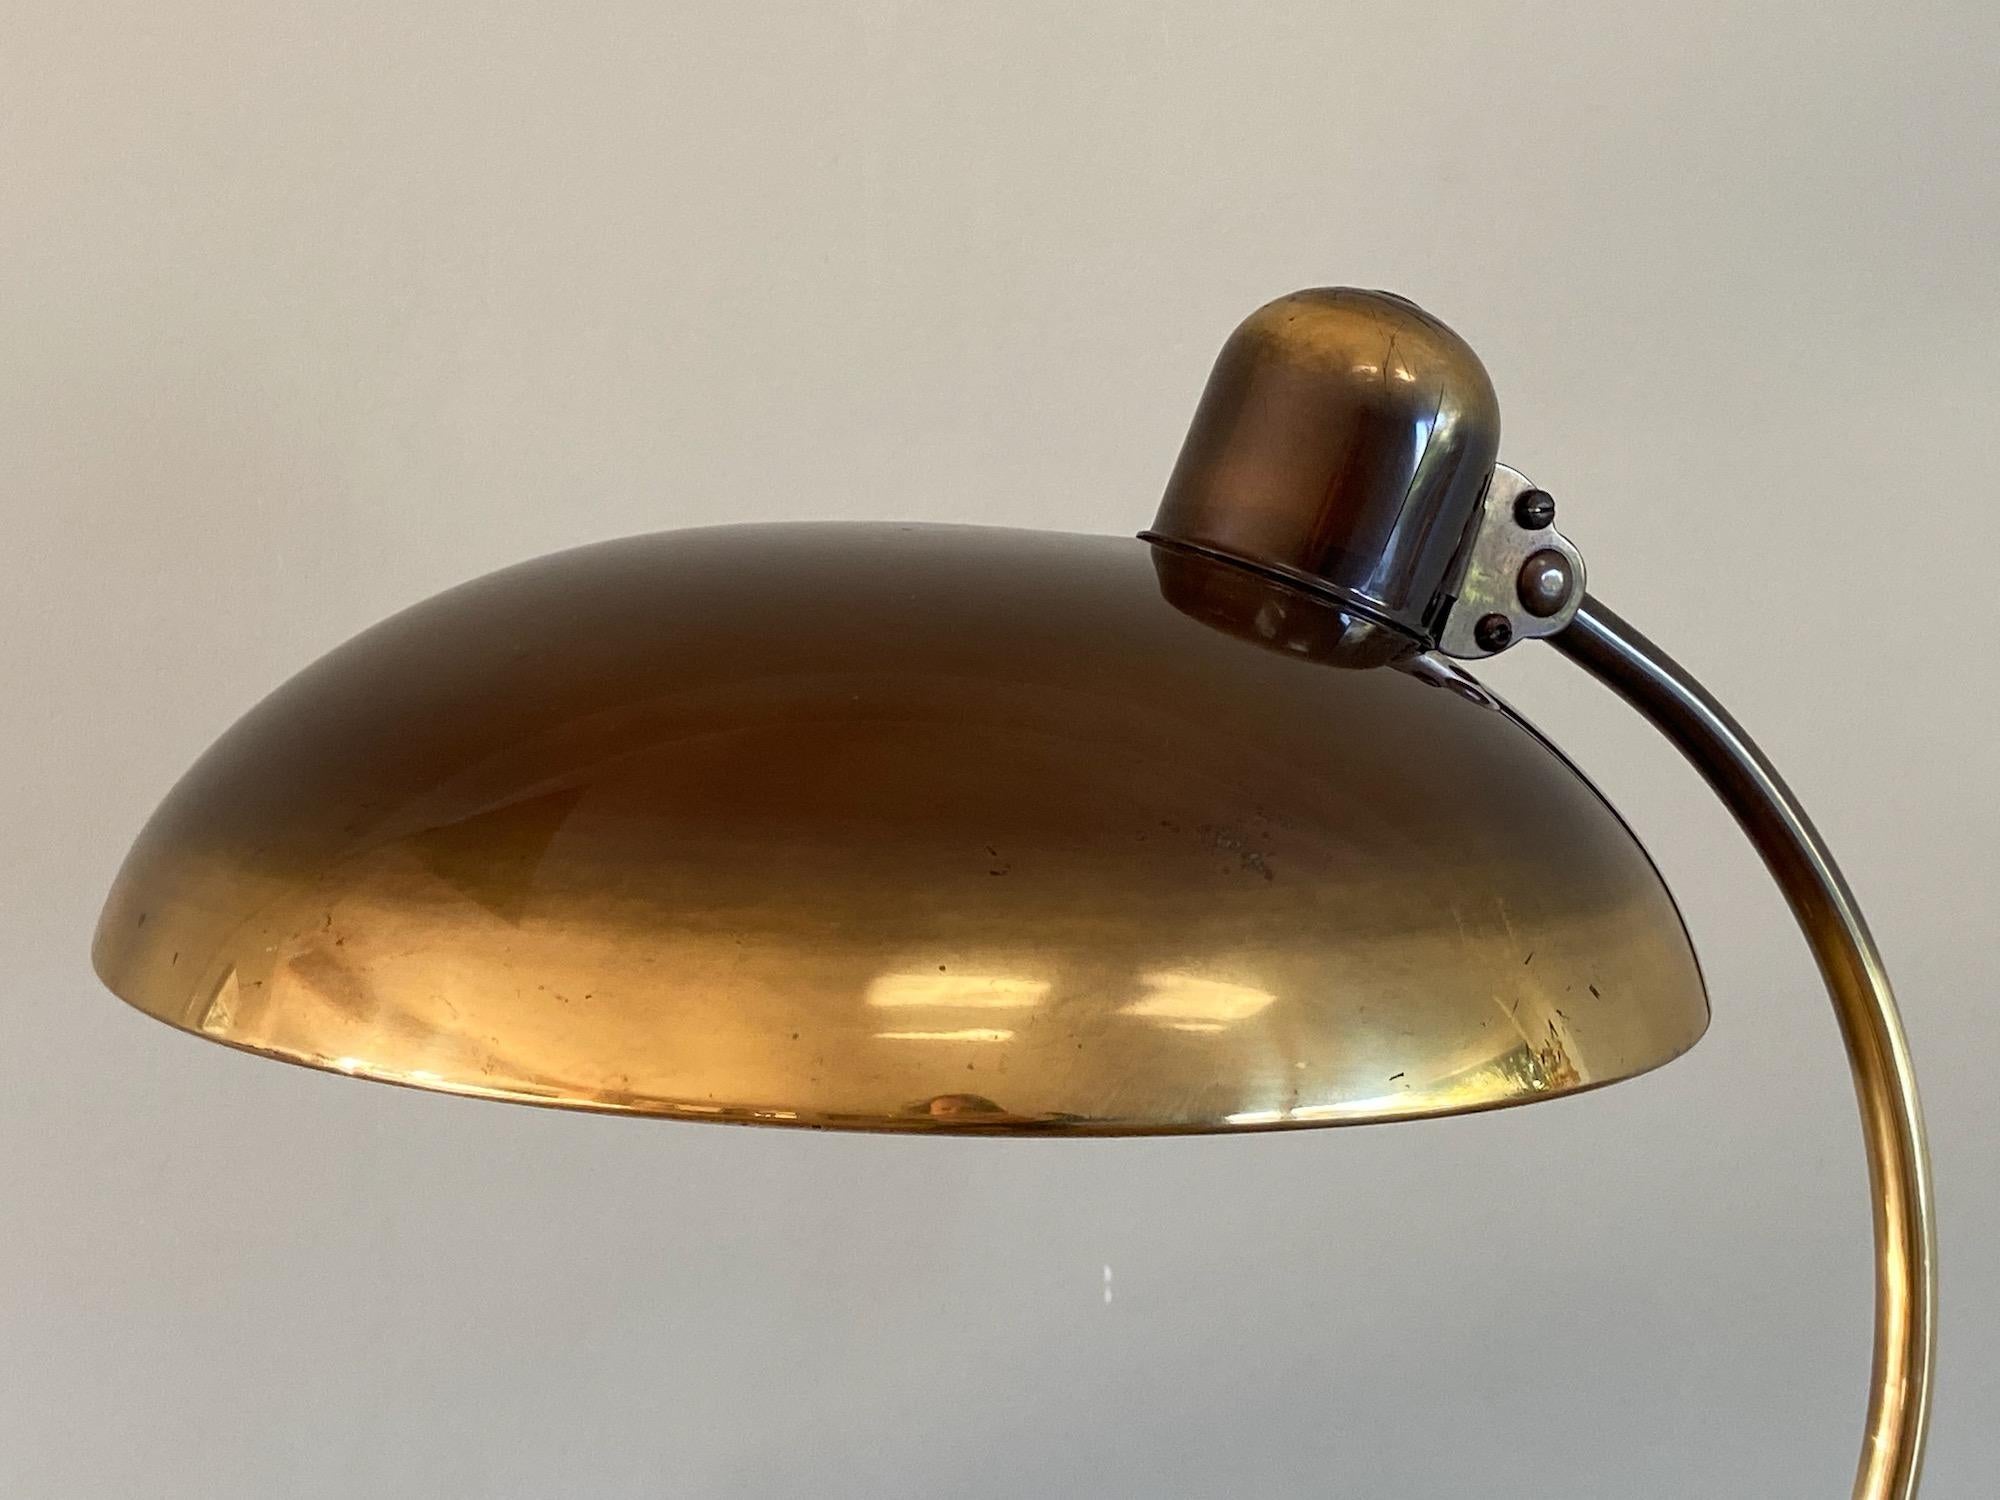 Christian Dell Brass Table Lamp 6631 Desk Lamp by Kaiser Idell Bauhaus, Germany 1